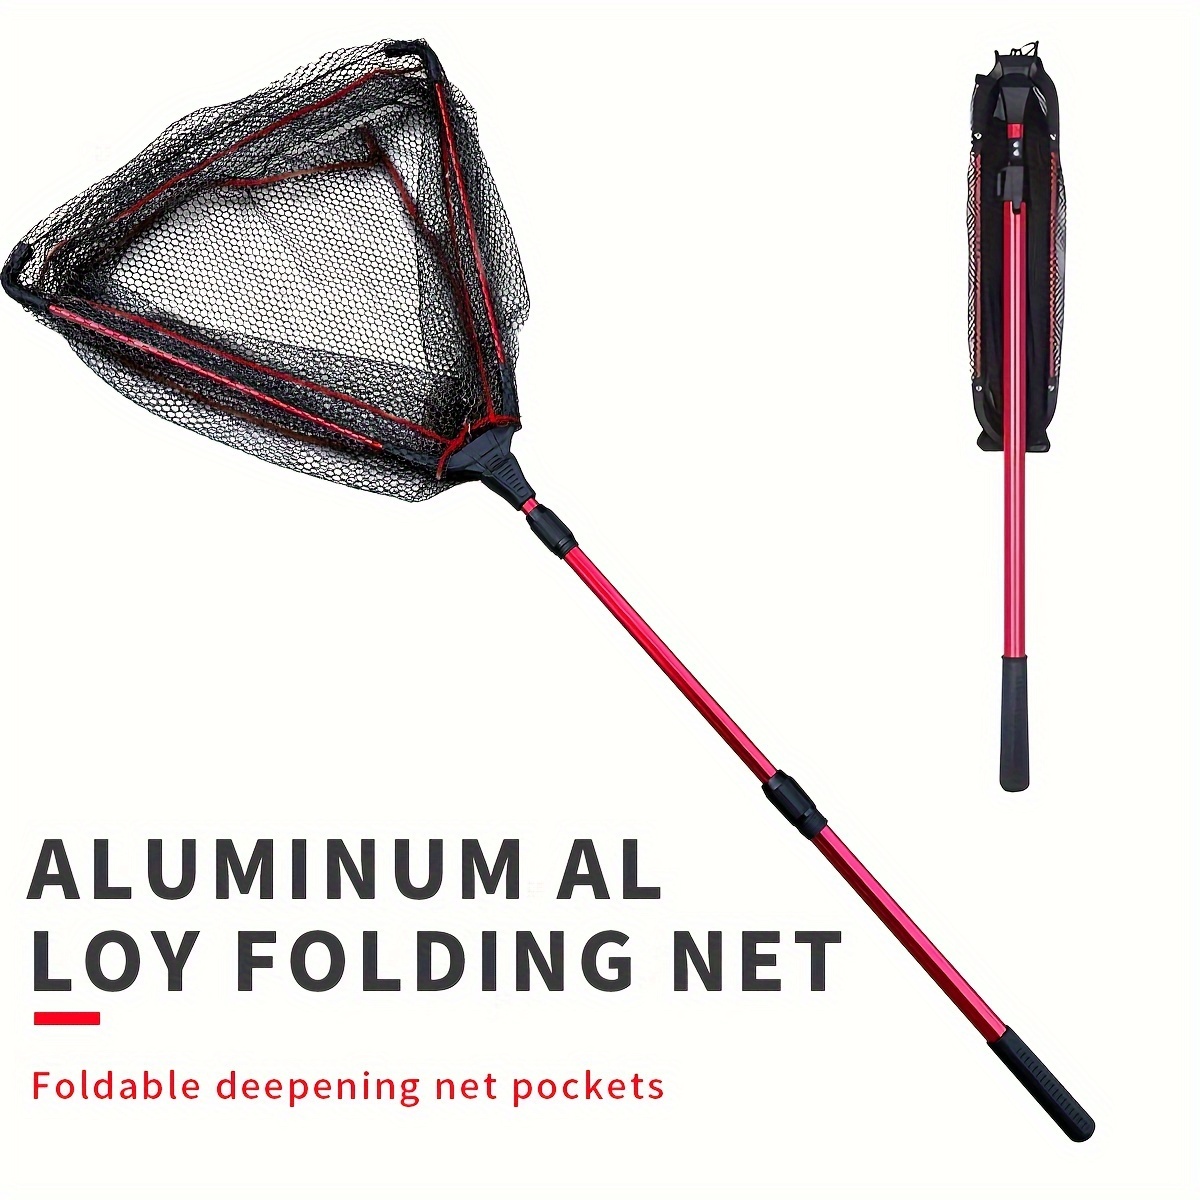 Sougayilang Foldable Fishing Net Retractable, 65 112cm Landing